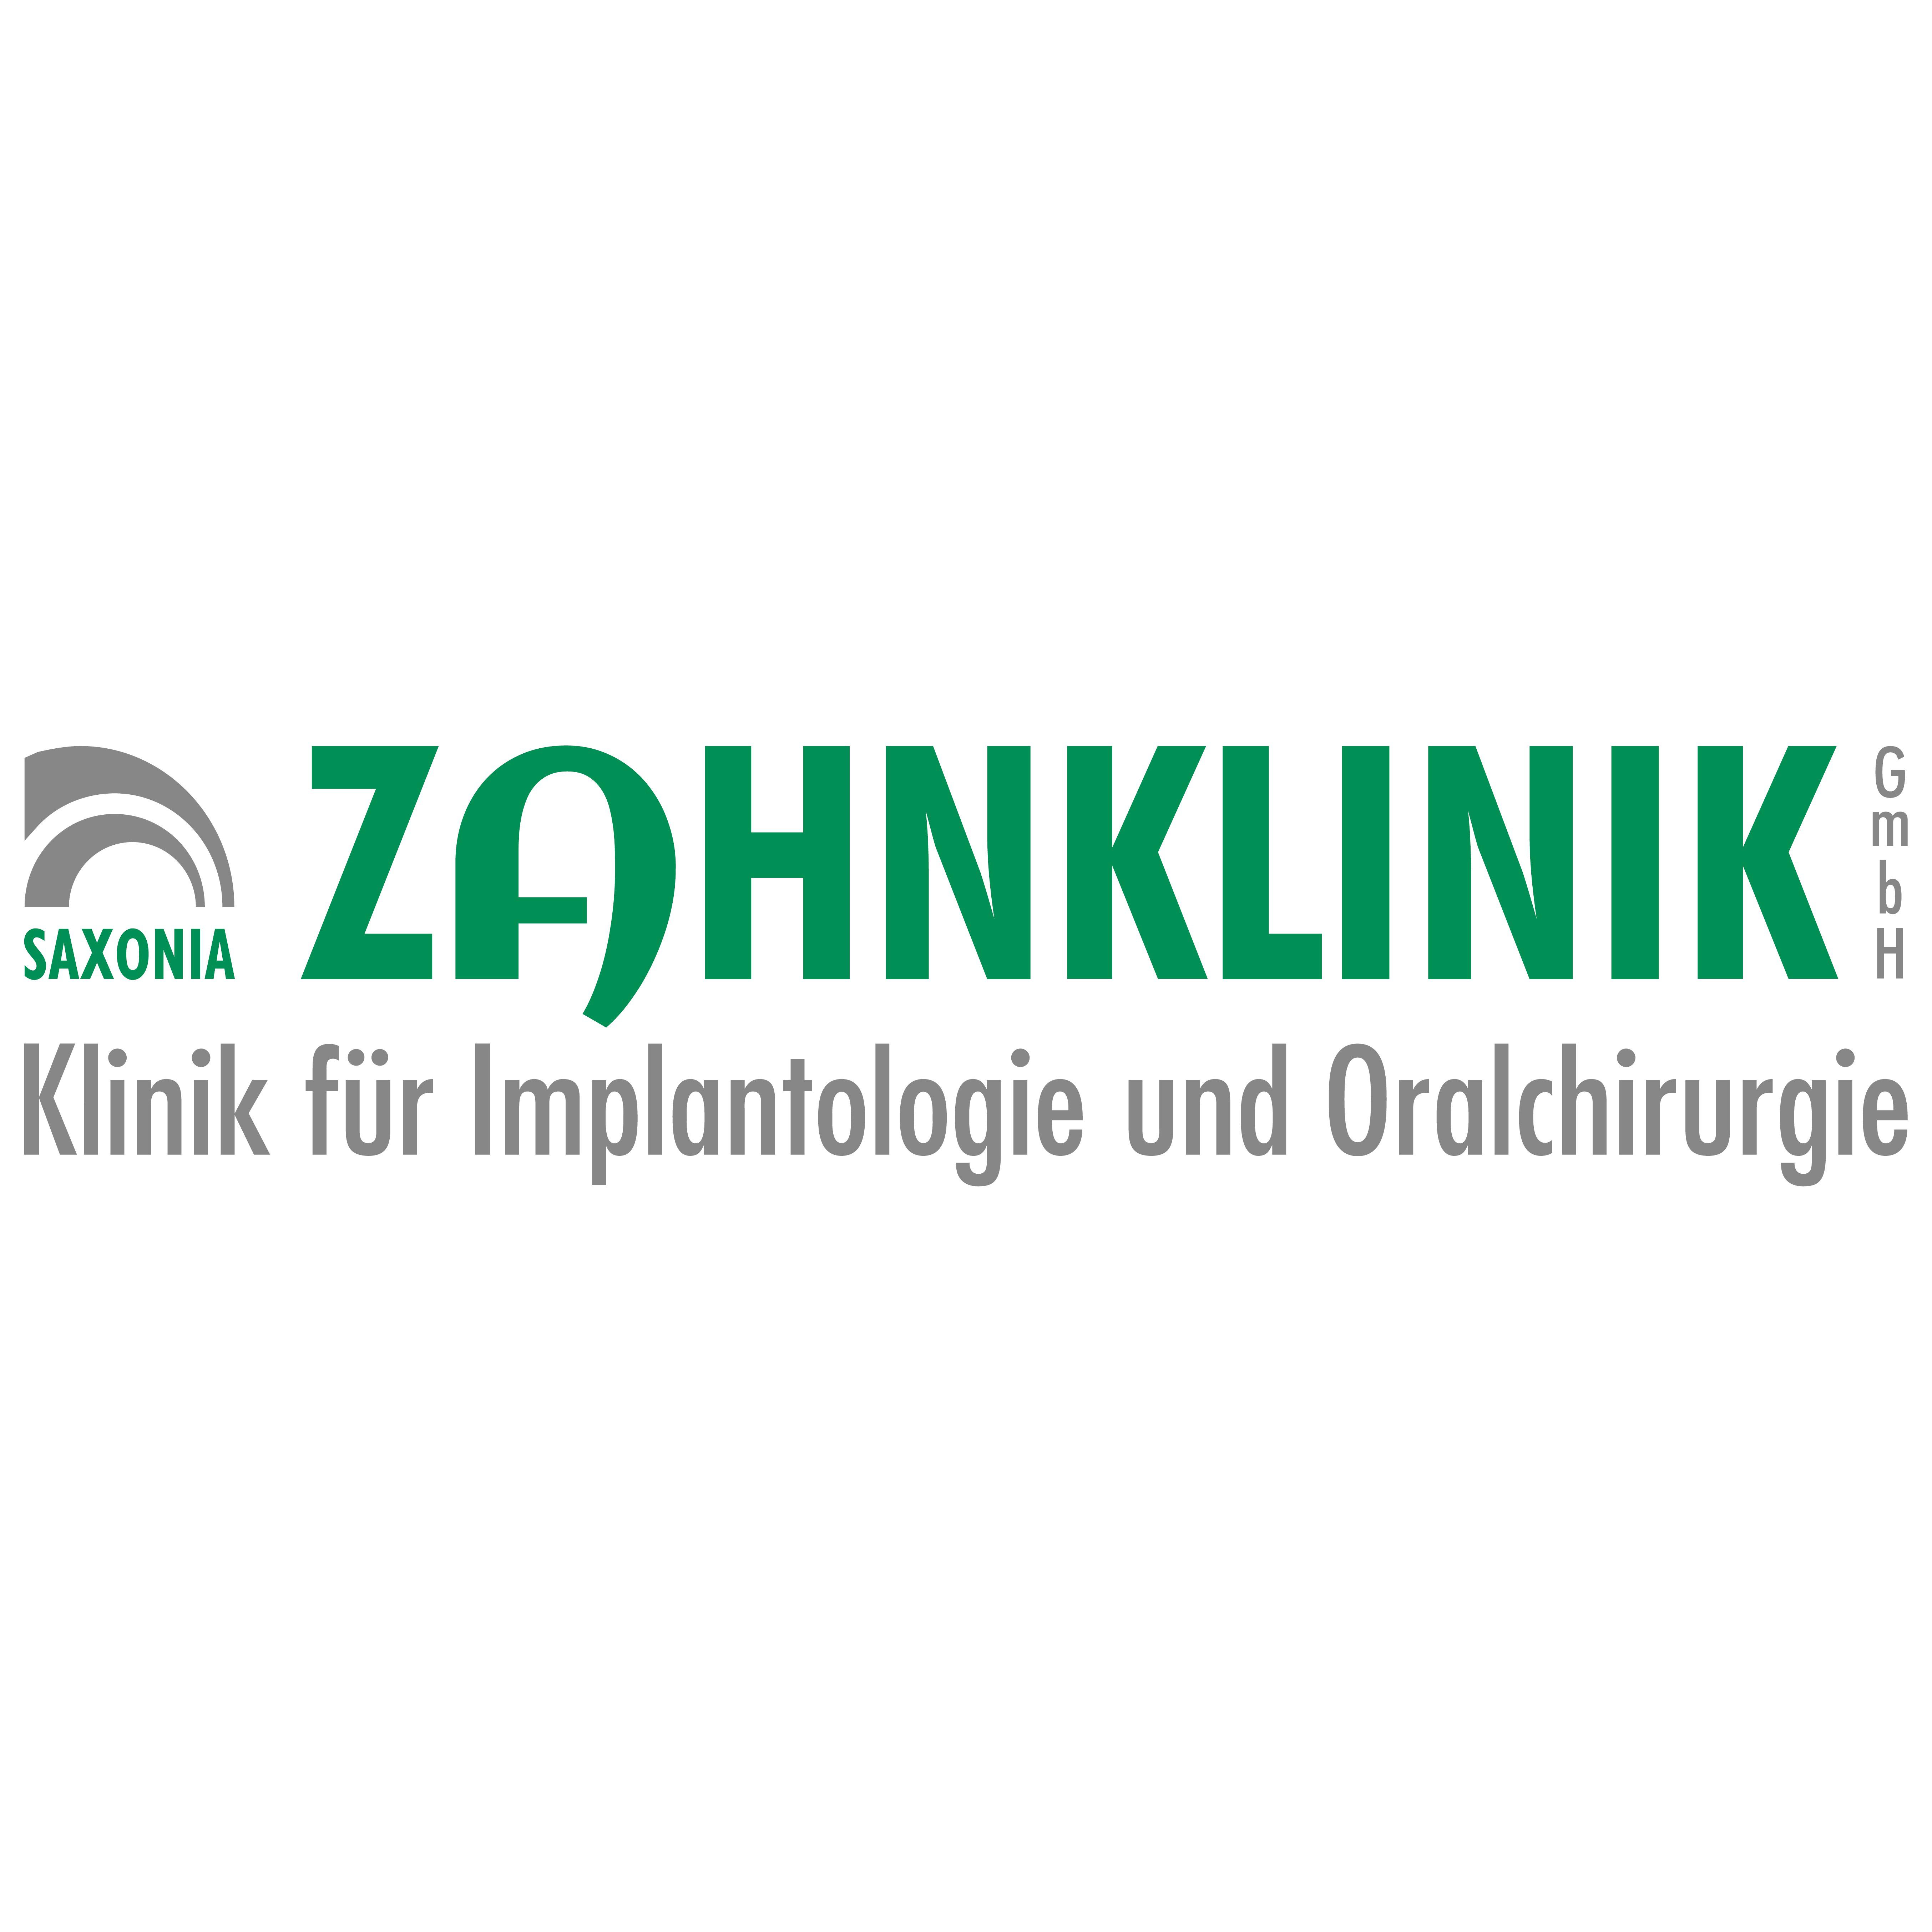 Saxonia-Zahnklinik GmbH Klinik für Implantologie und Oralchirurgie in Leipzig - Logo